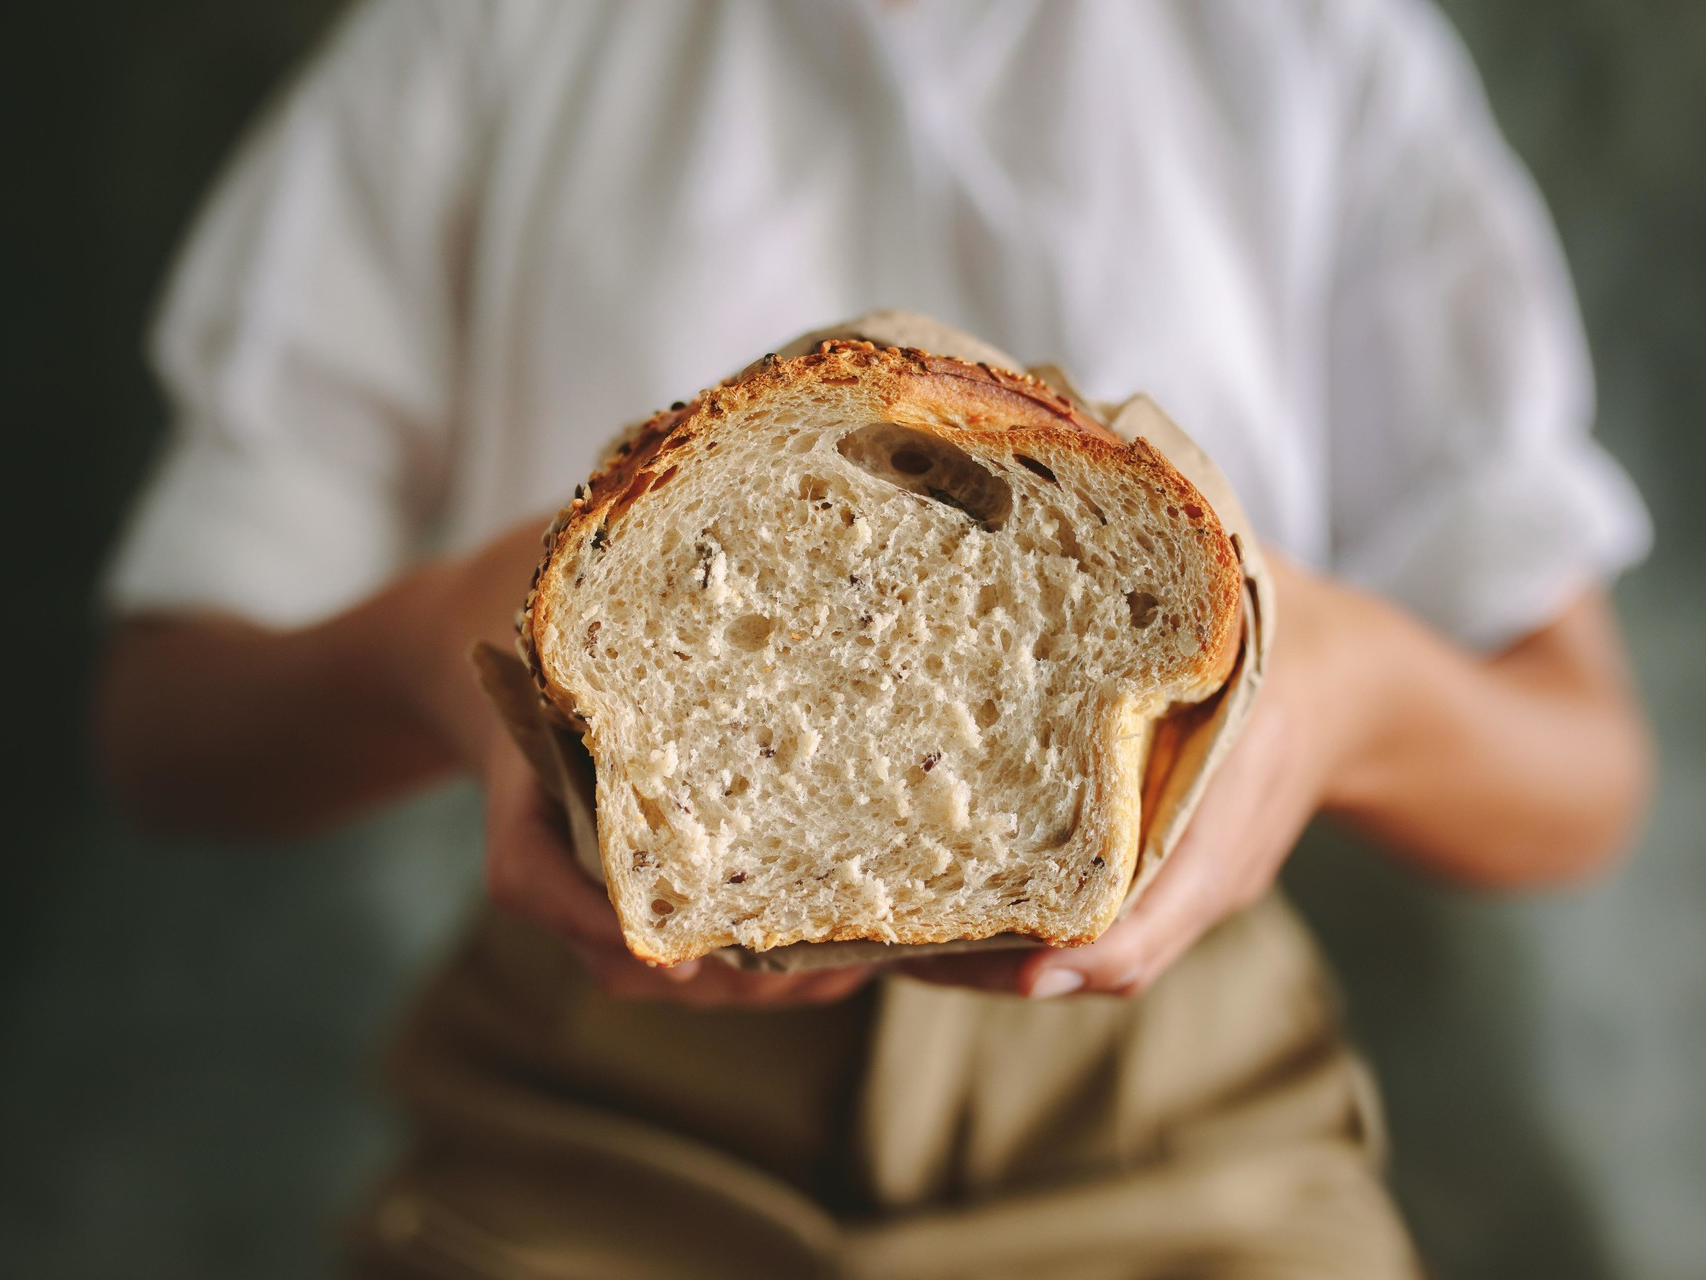 Четверо ножниц мягчайший хлеб поезжай. Черствый хлеб. Хлеб в руках. Несвежий хлеб. Хлебопек.